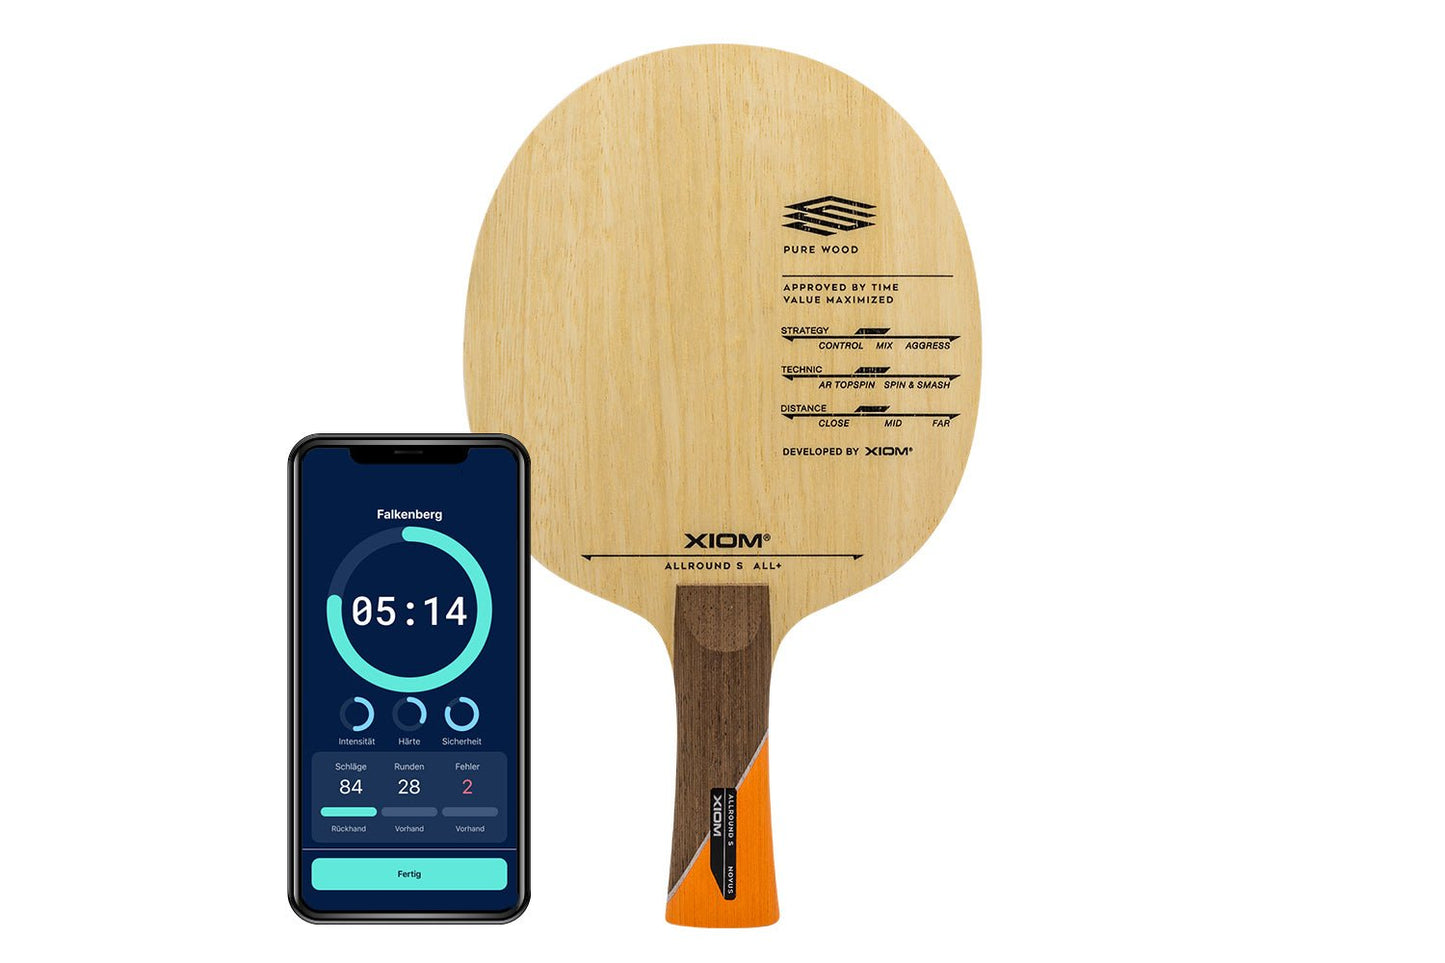 Xiom Allround S Tischtennisschläger mit konkaven Griff und Smartphone zeigt Daten des Schlägers vor weißem Hintergrund